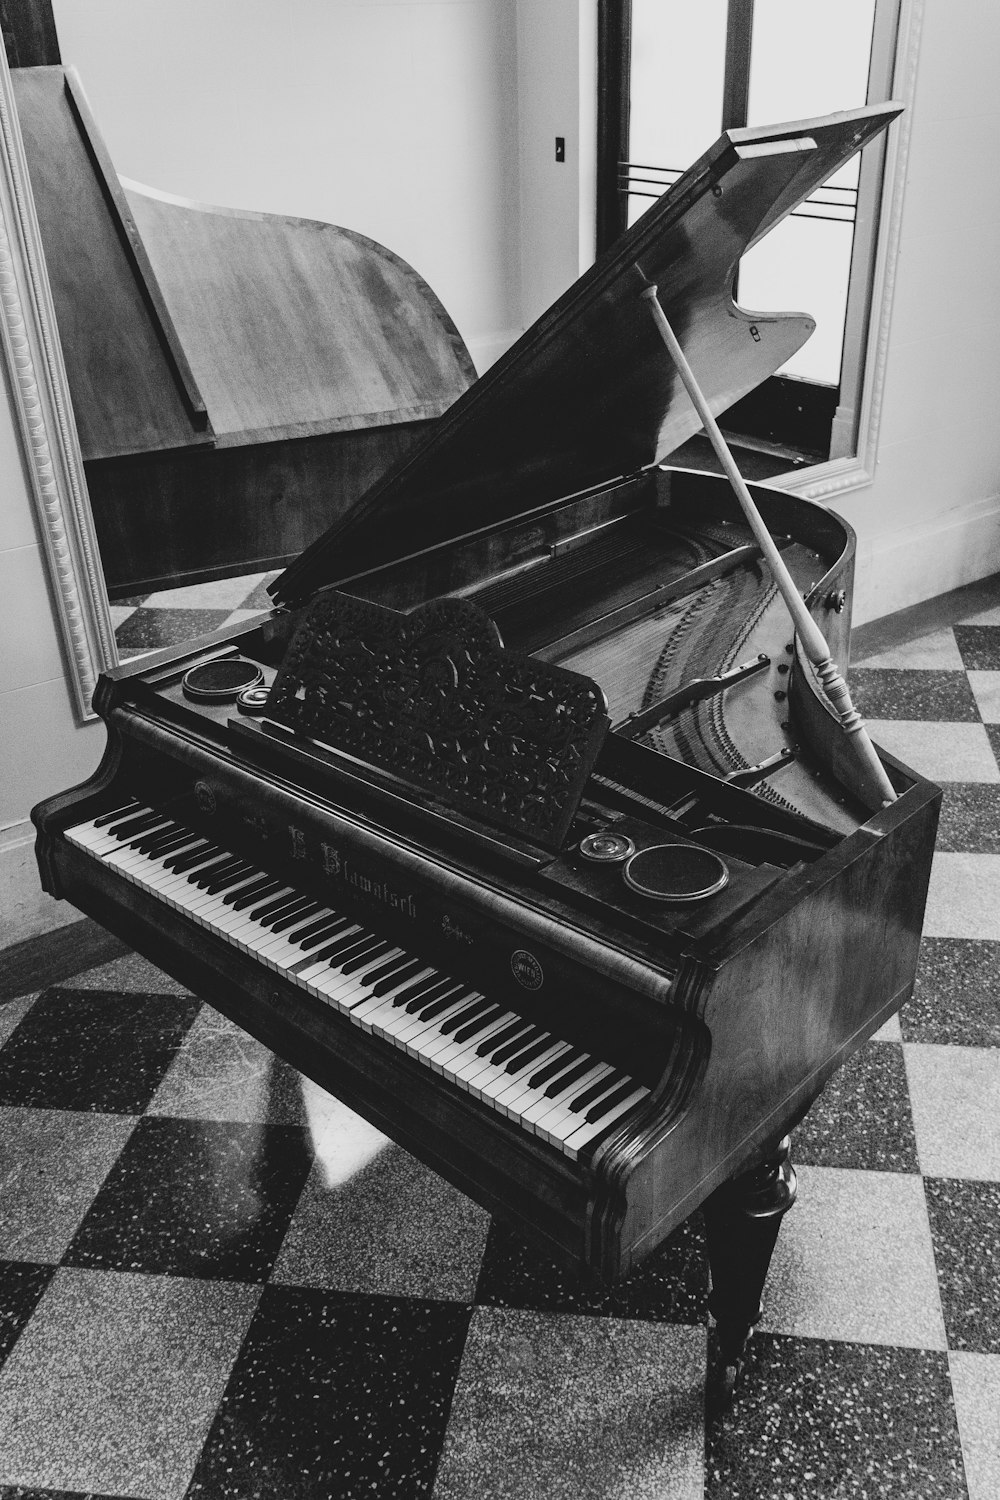 그랜드 피아노의 그레이스케일 사진